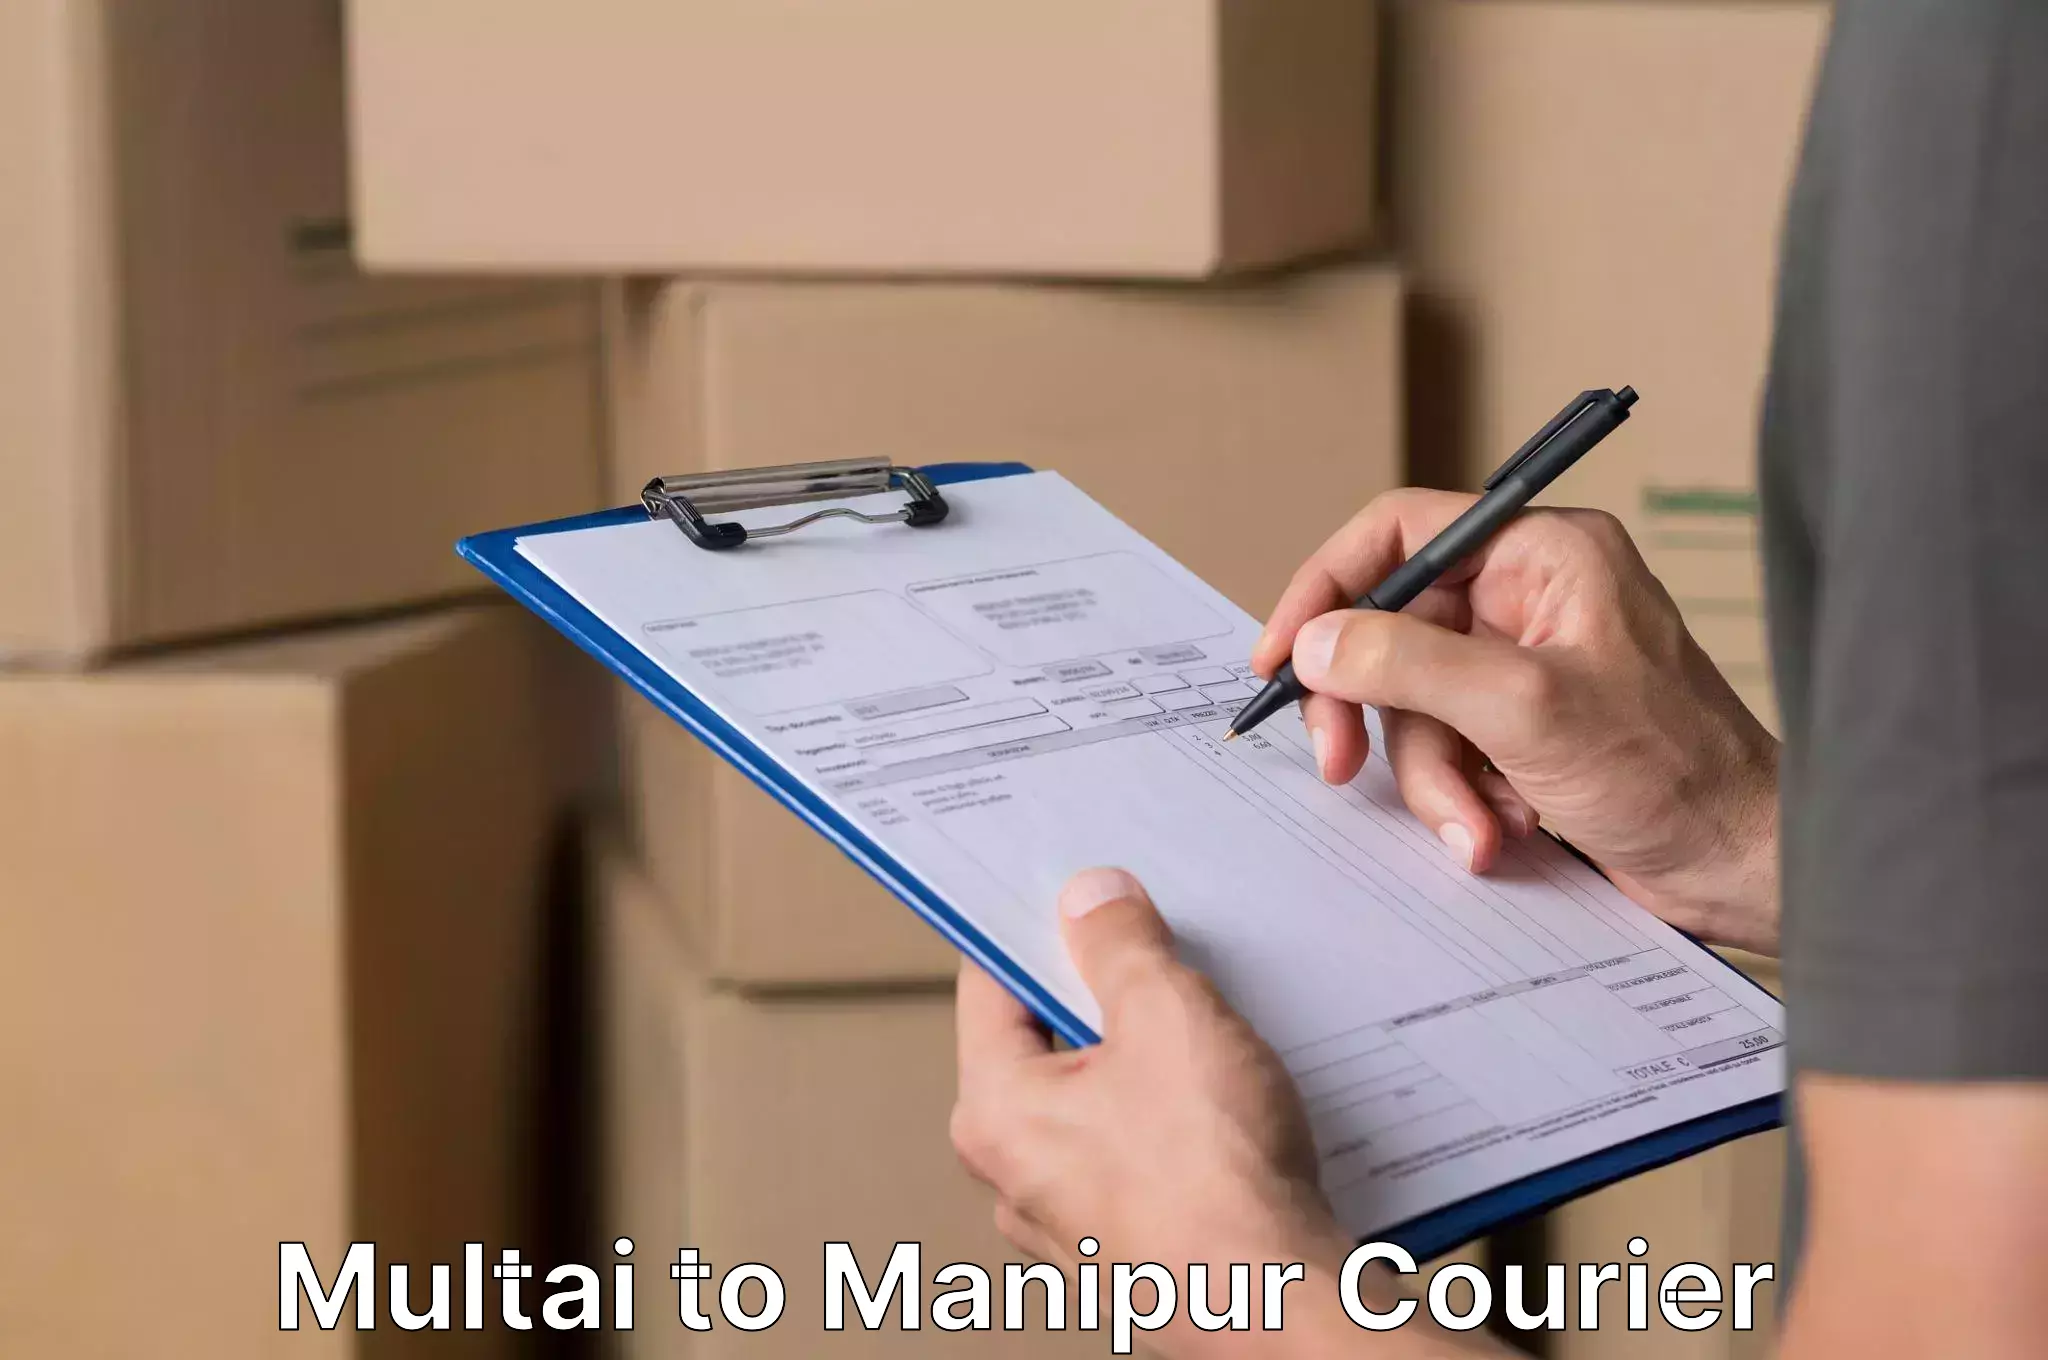 Furniture transport experts Multai to Manipur